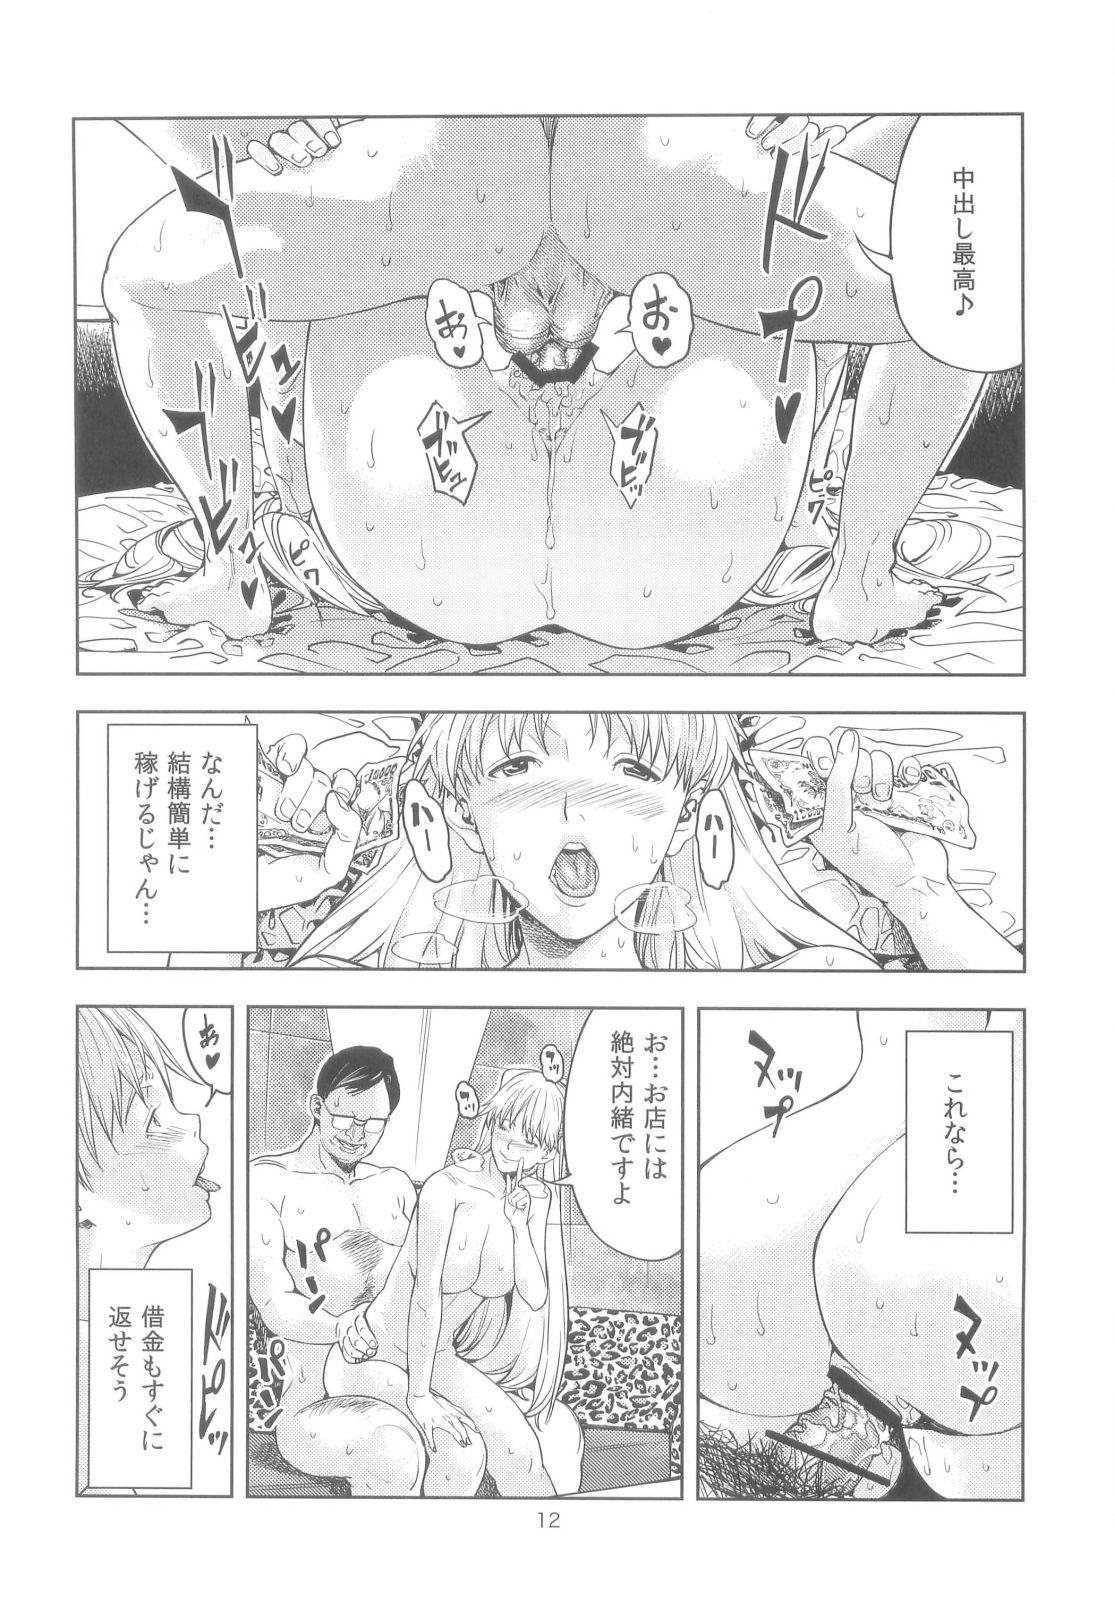 Deepthroat Aino Minako - Sailor moon Balls - Page 12